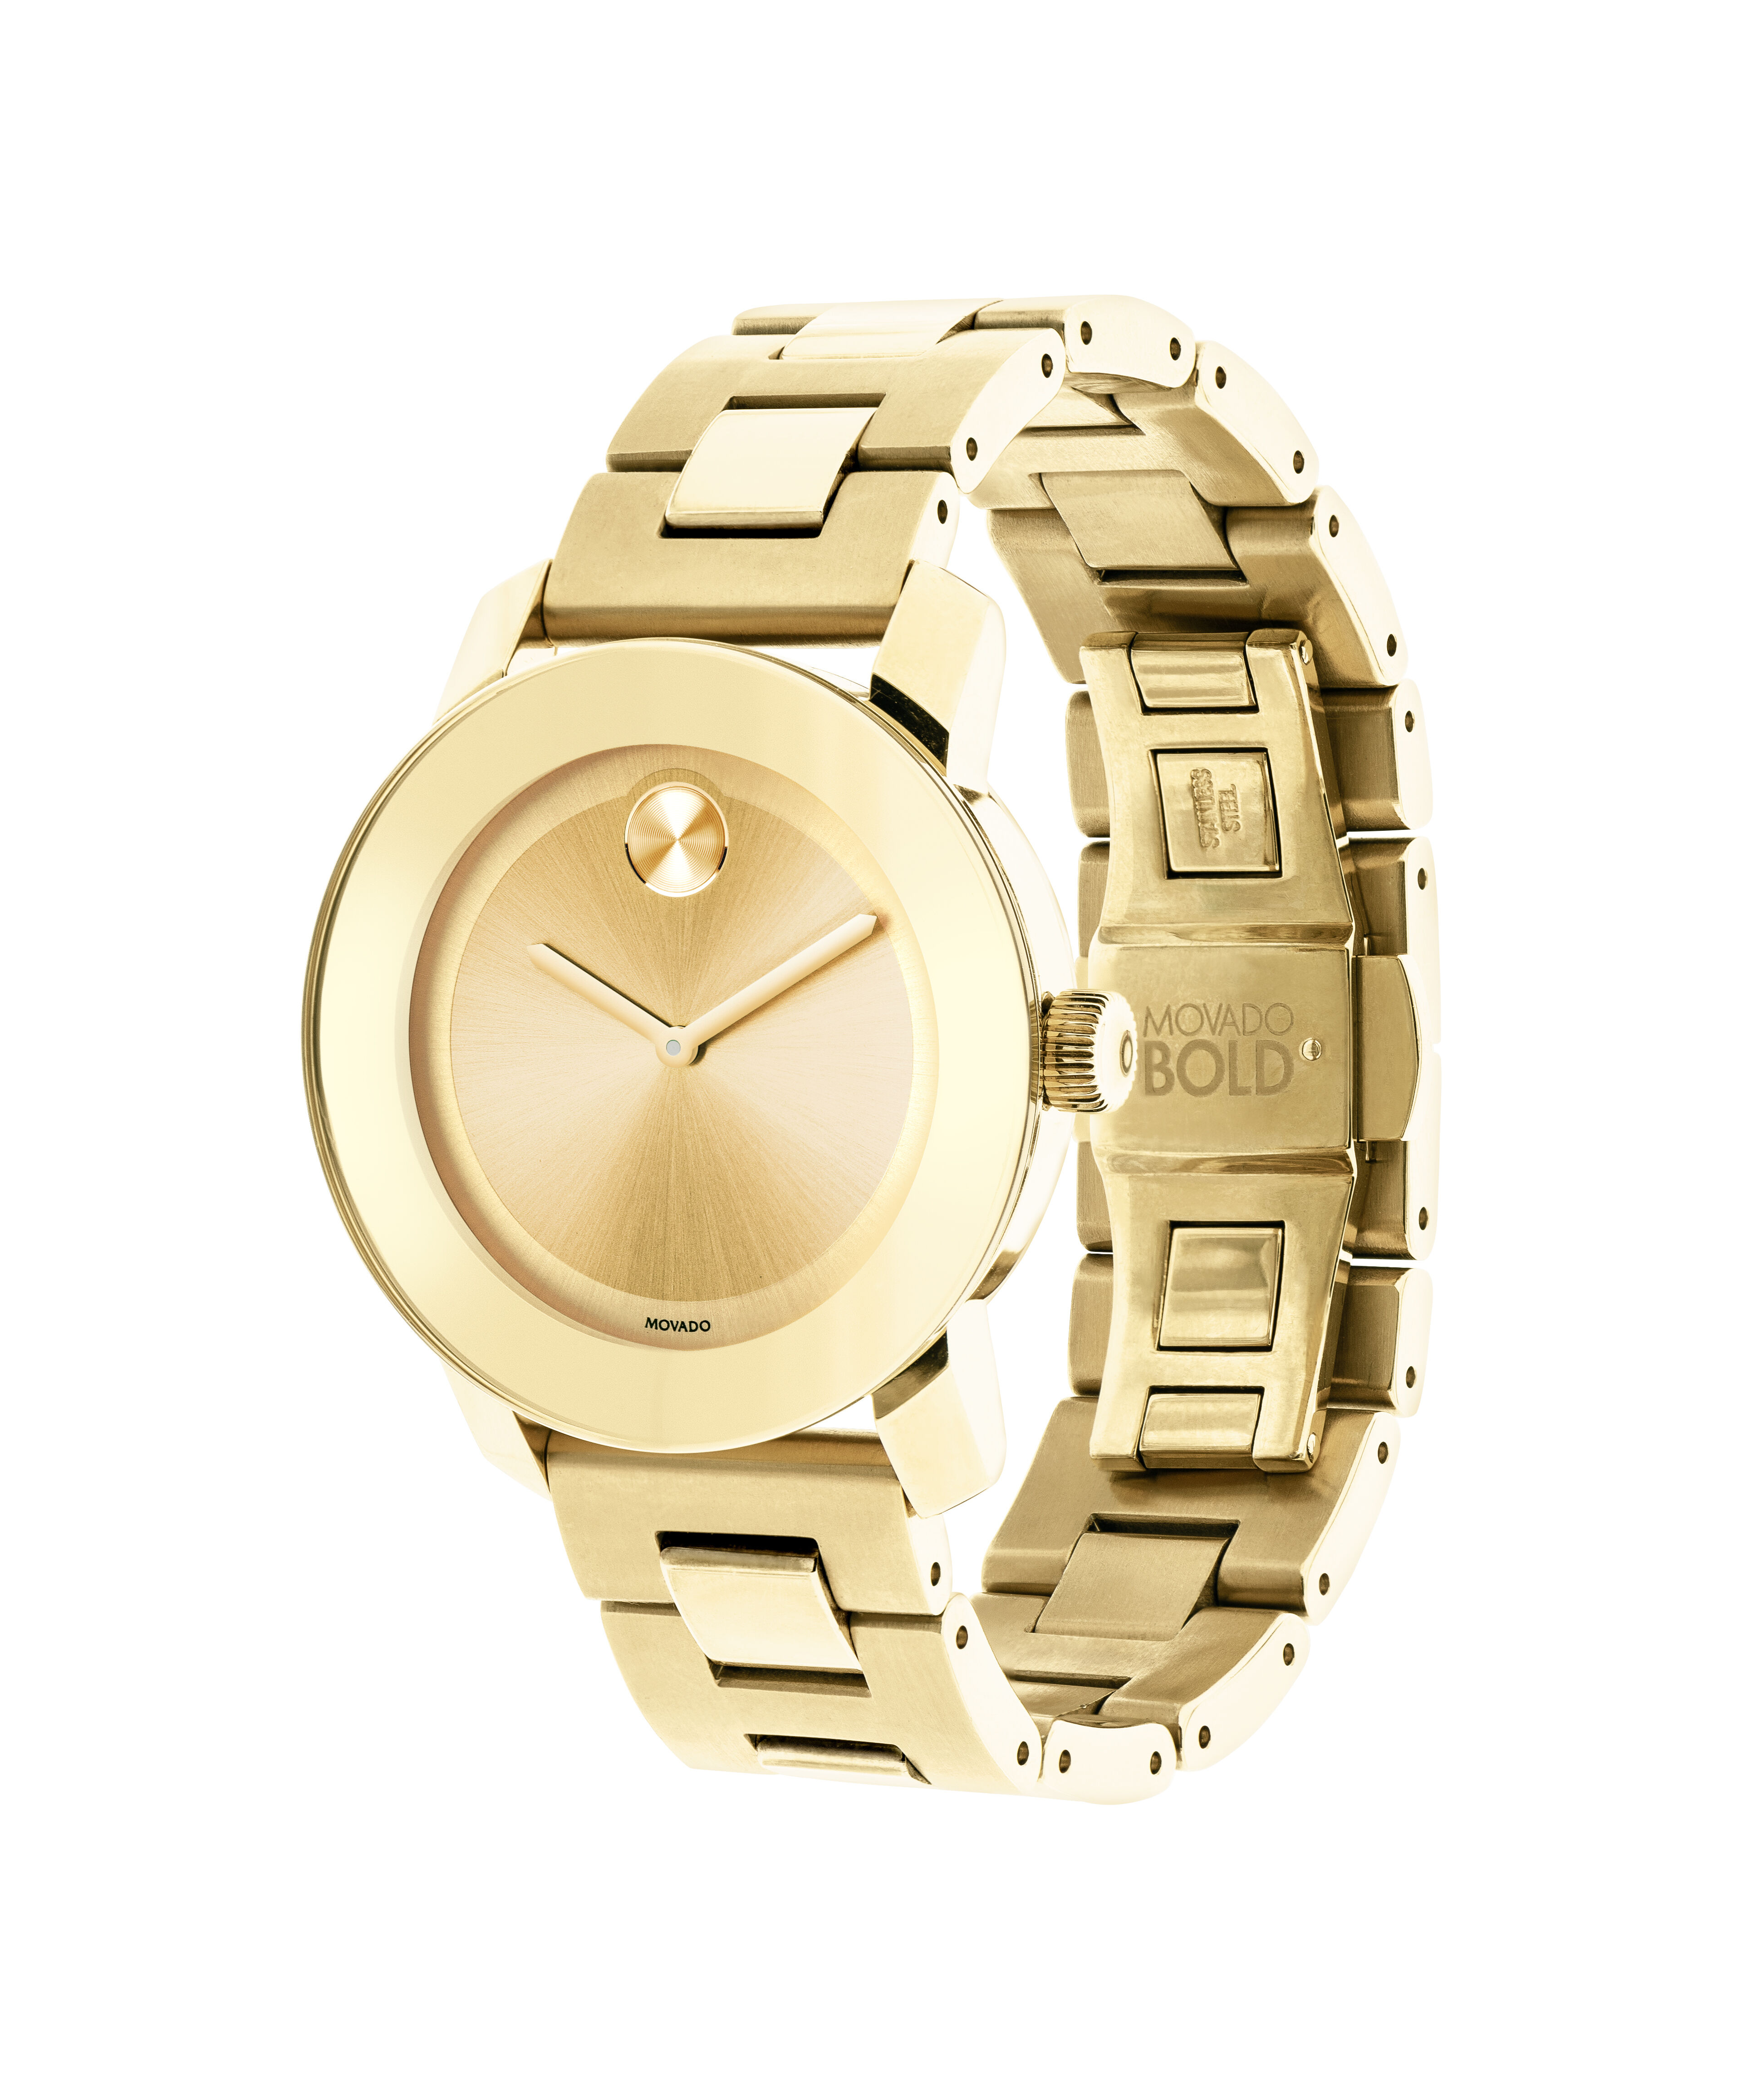 Gold Rolex Replica Watches